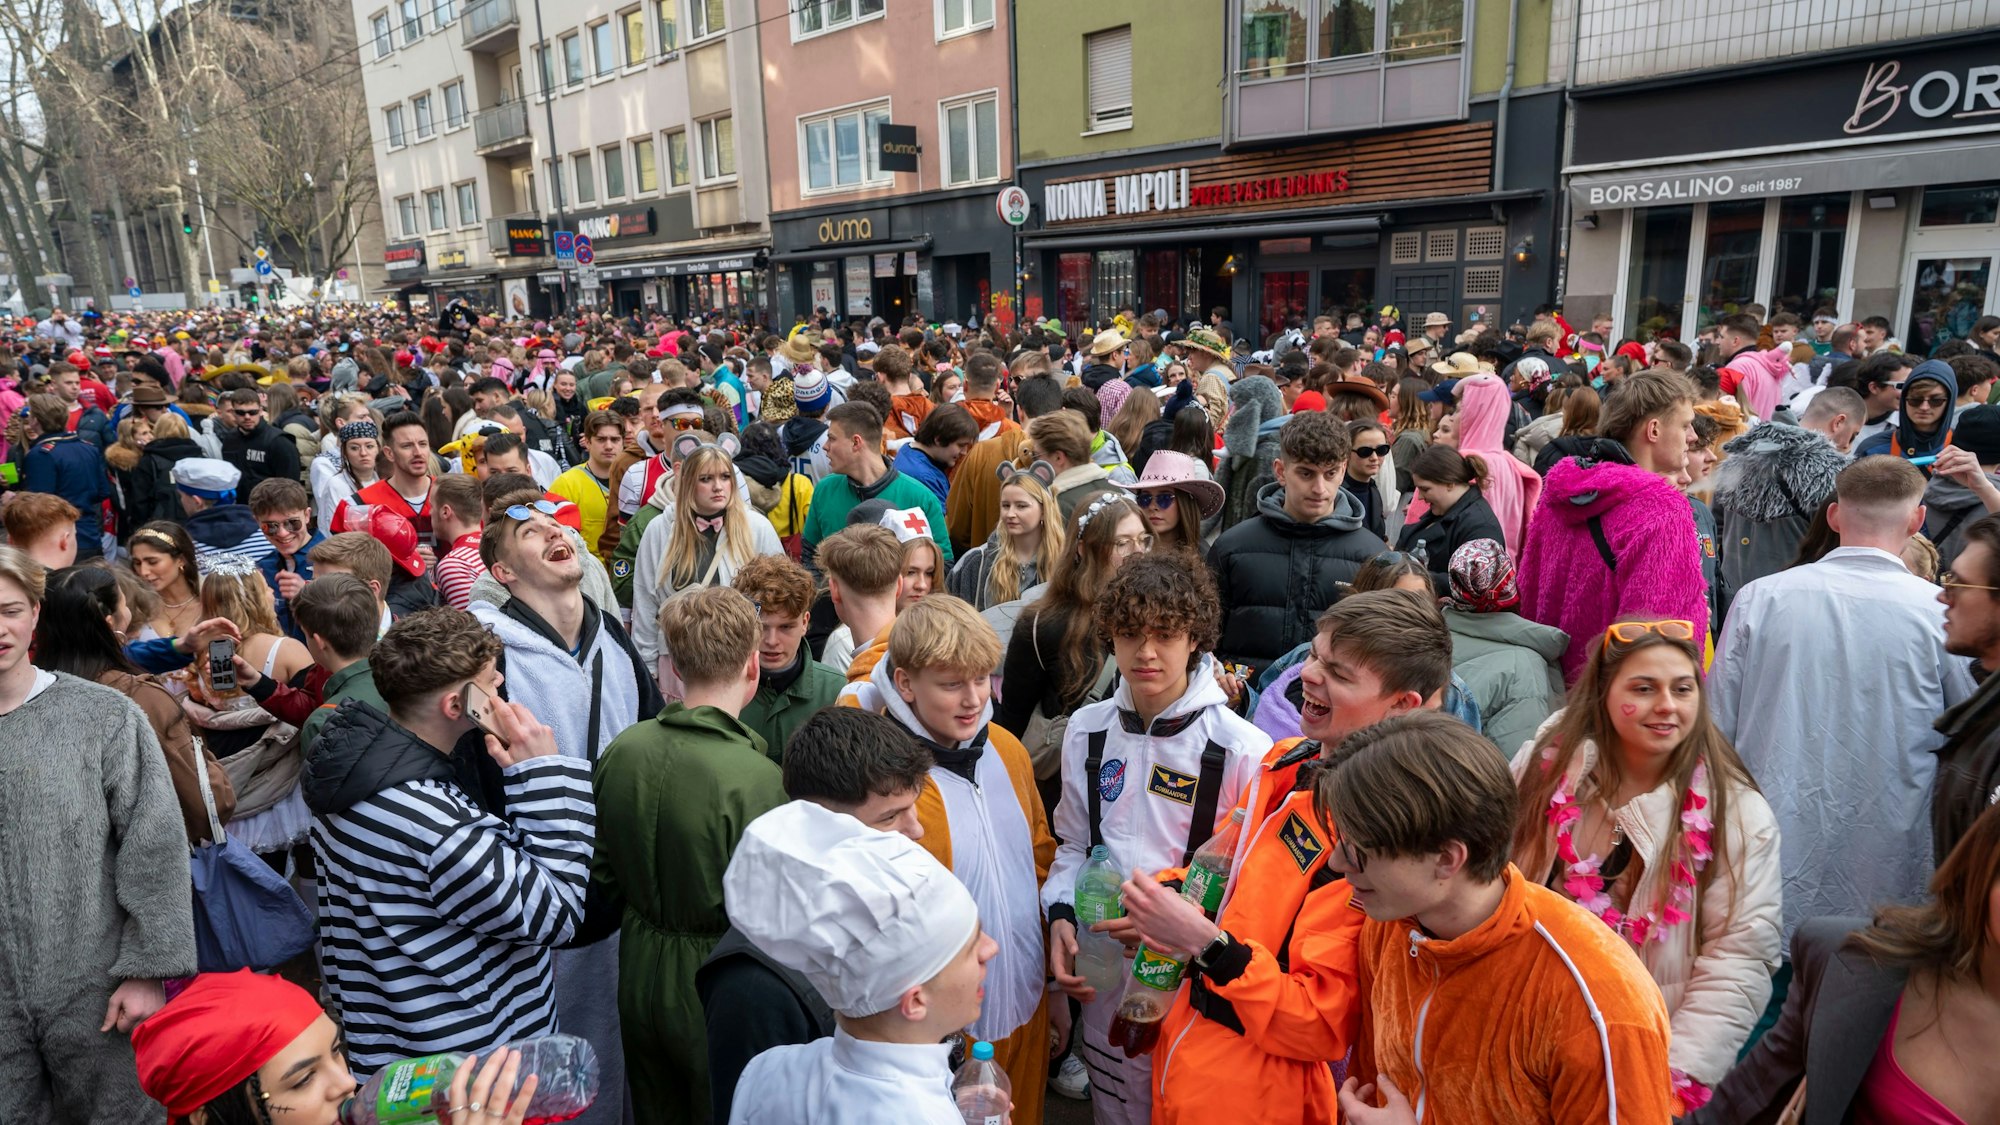 Viele Menschen feiern auf der Zülpicher Straße in Köln verkleidet an Karneval.